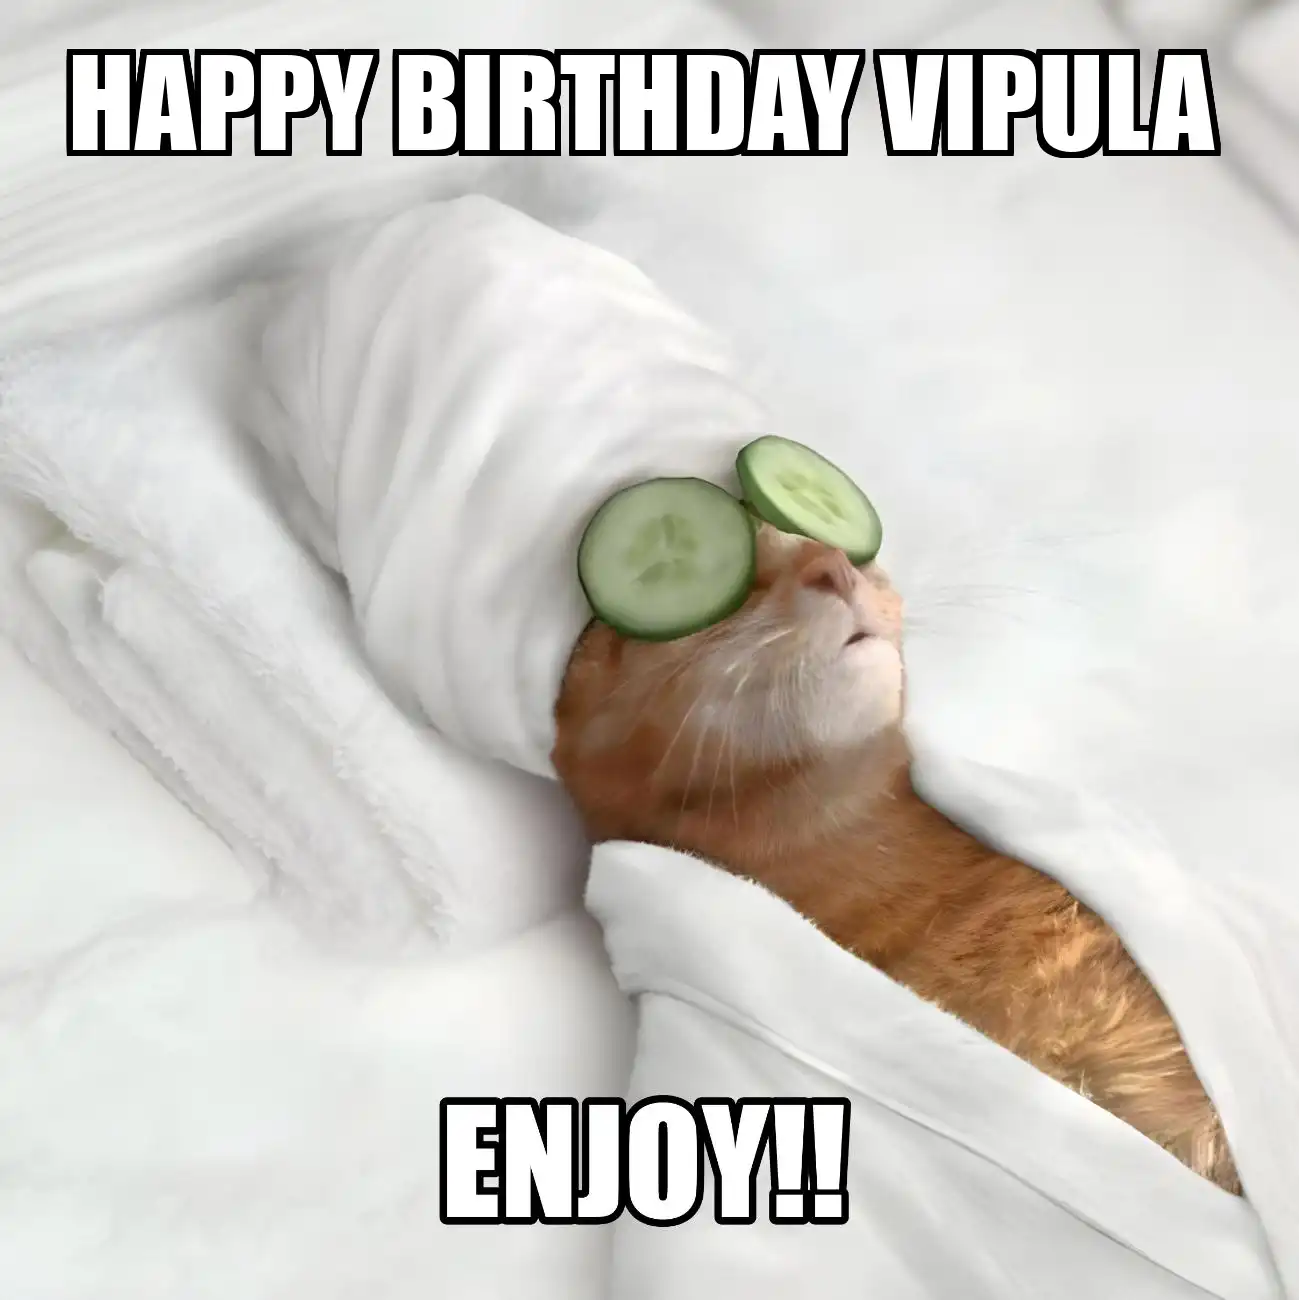 Happy Birthday Vipula Enjoy Cat Meme